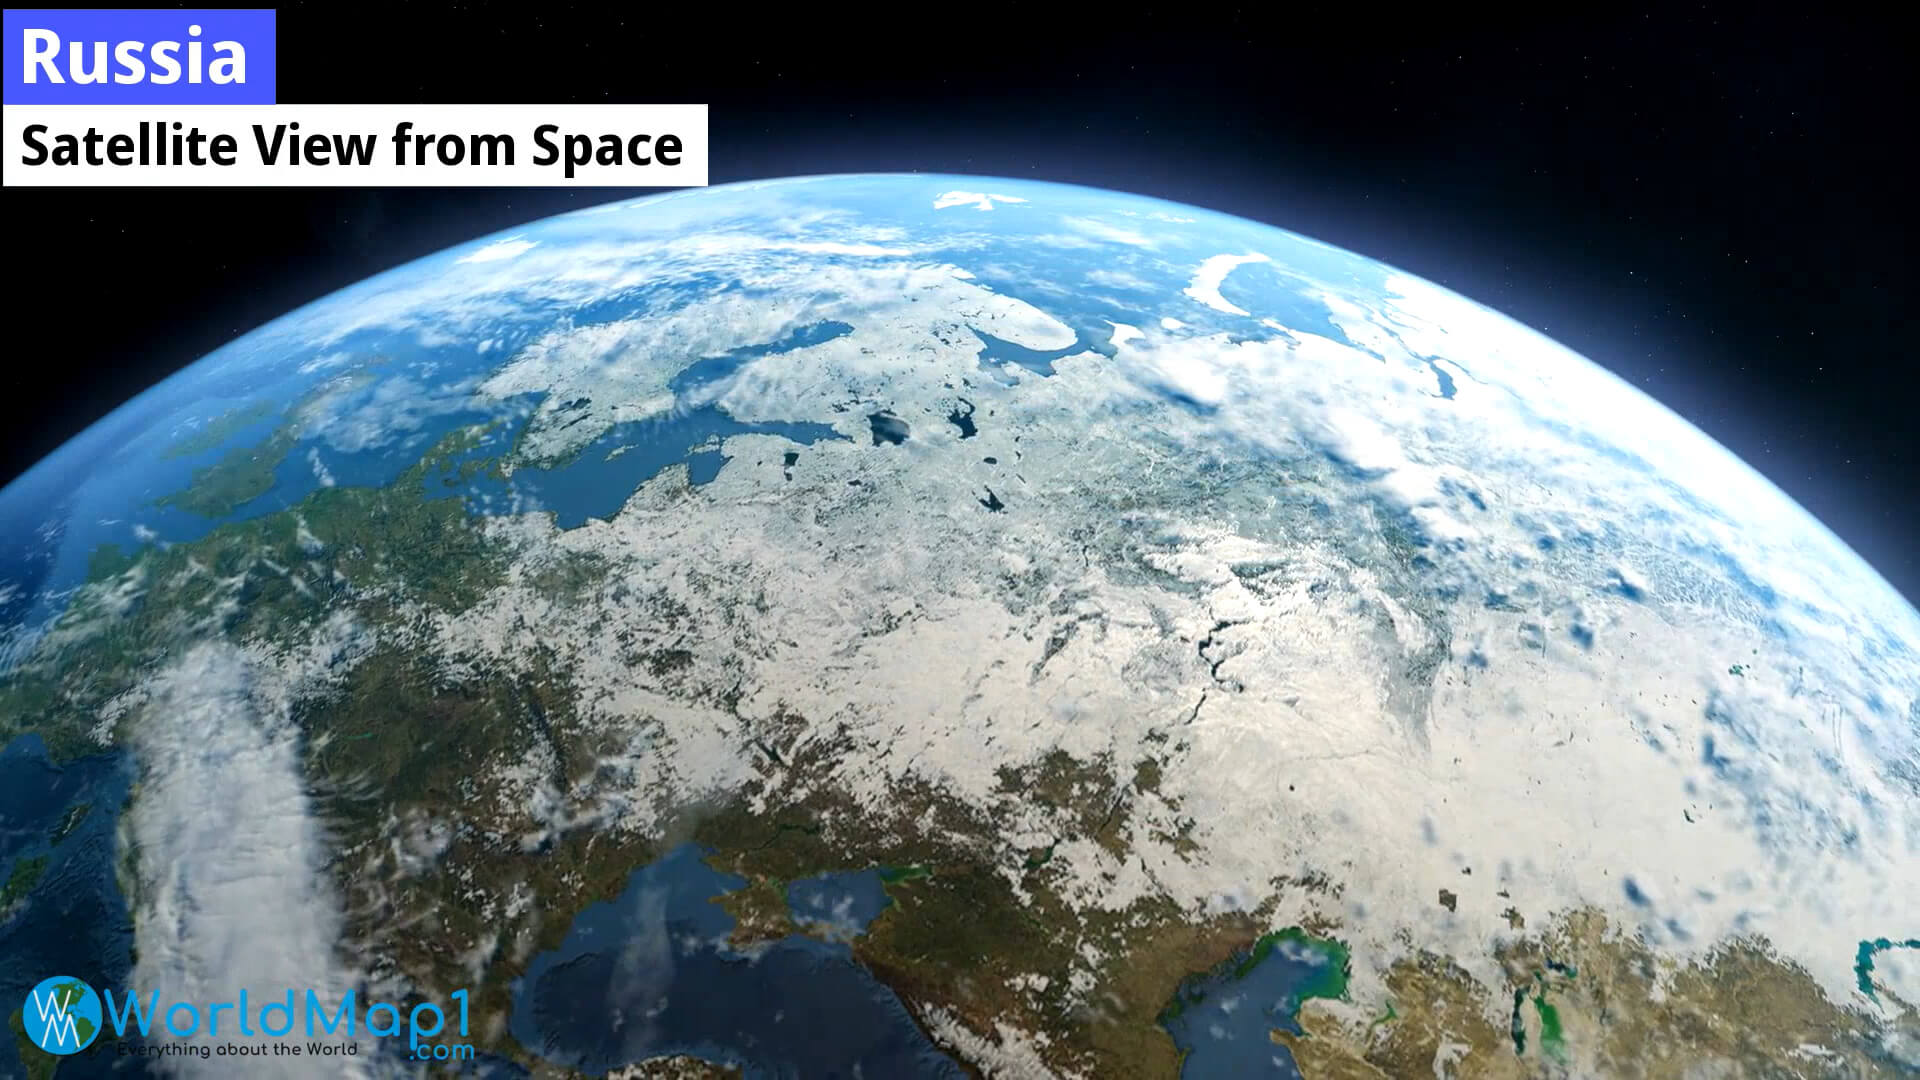 Vue satellite de la Russie depuis l'espace